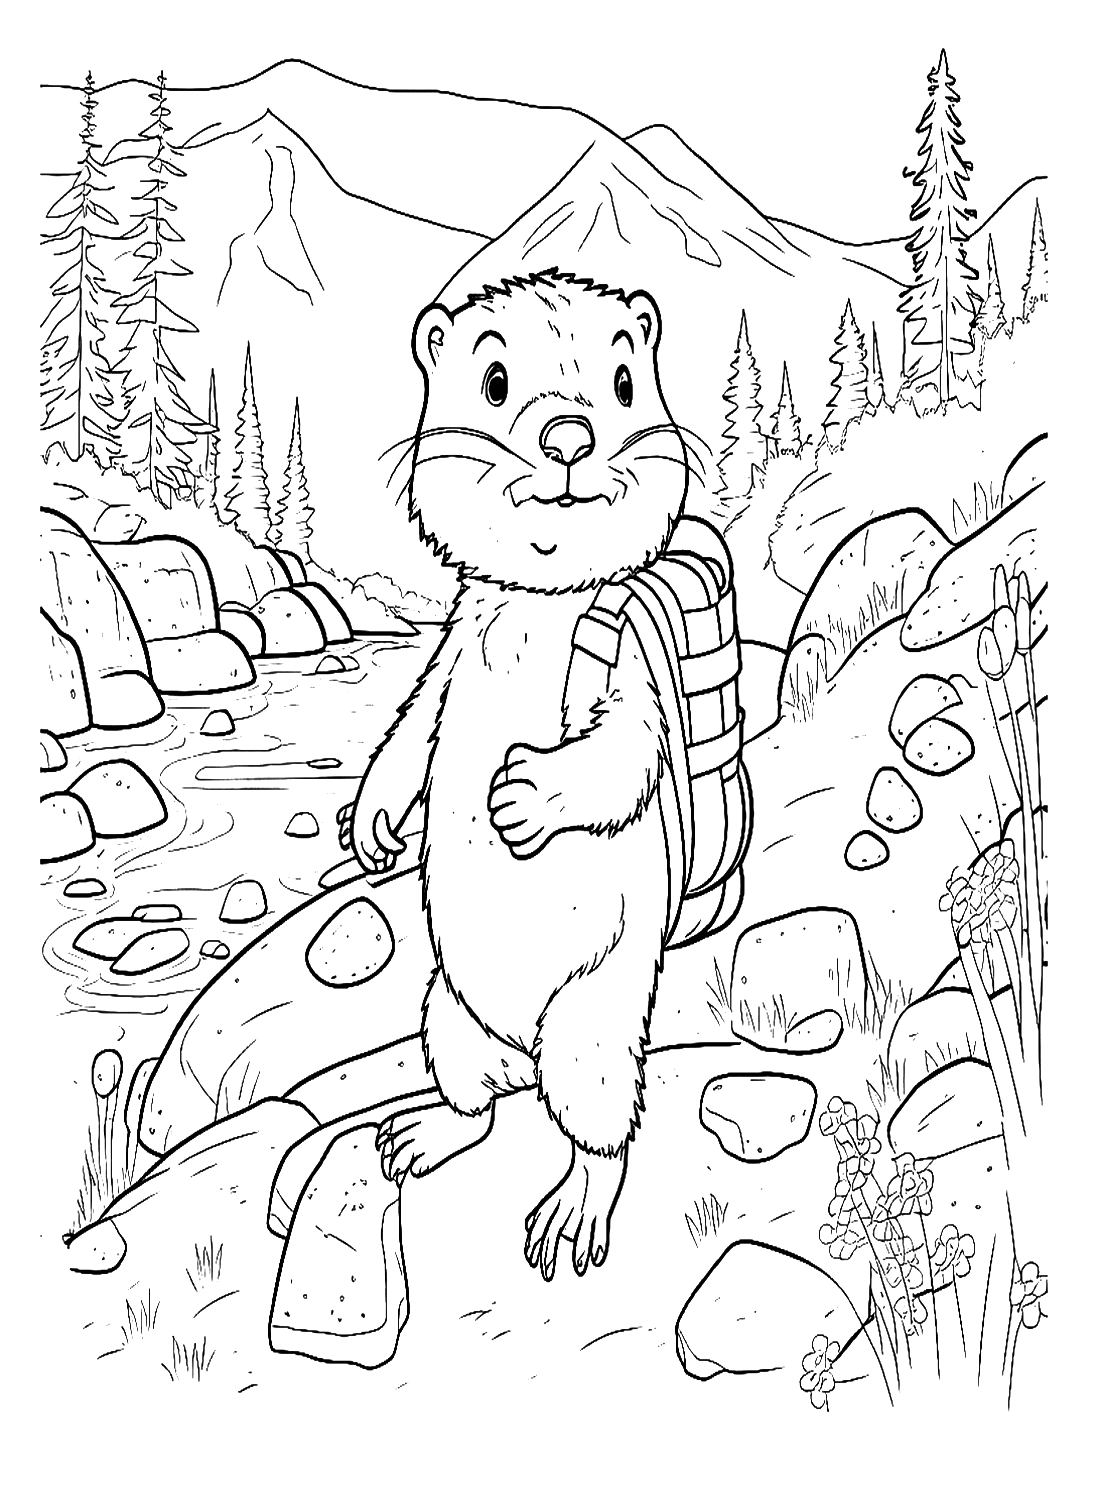 Marmotta che cammina sulla riva del fiume from Marmotta